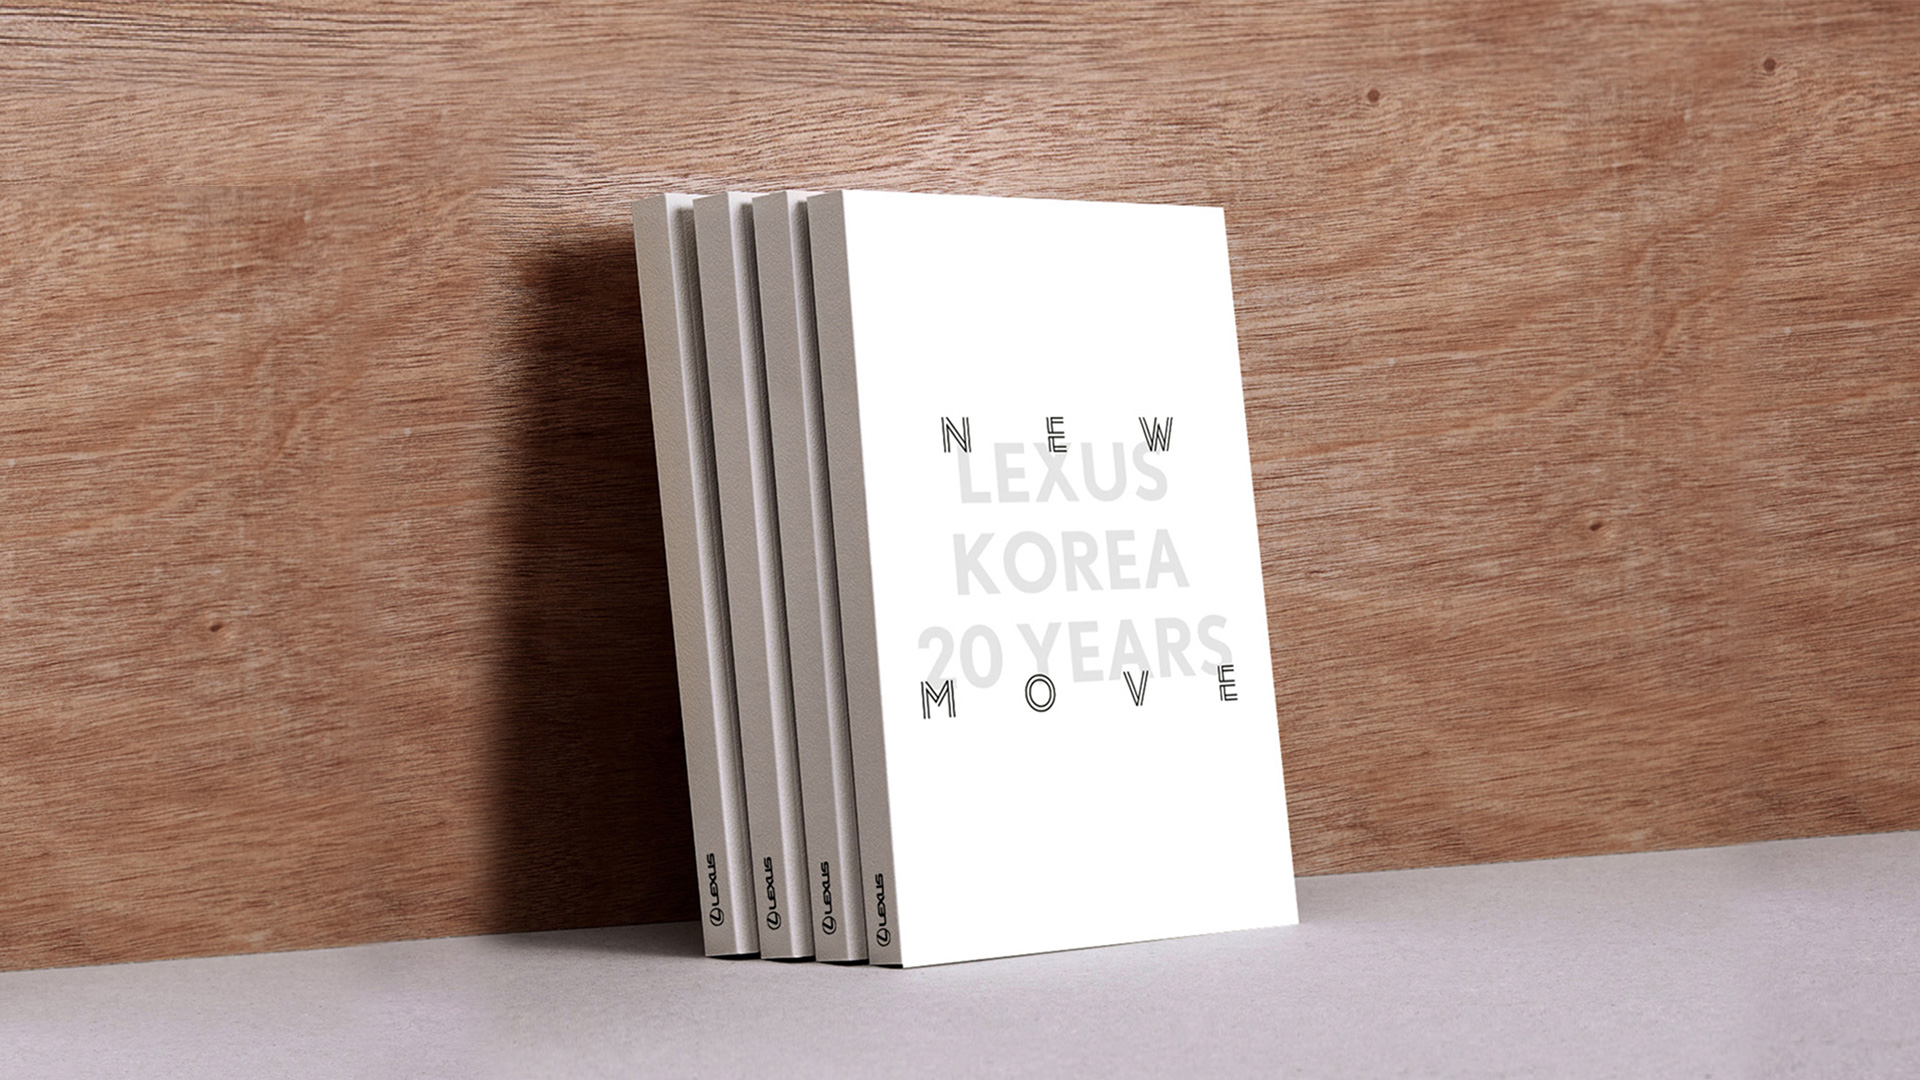 雷克萨斯韩国20周年纪念画册